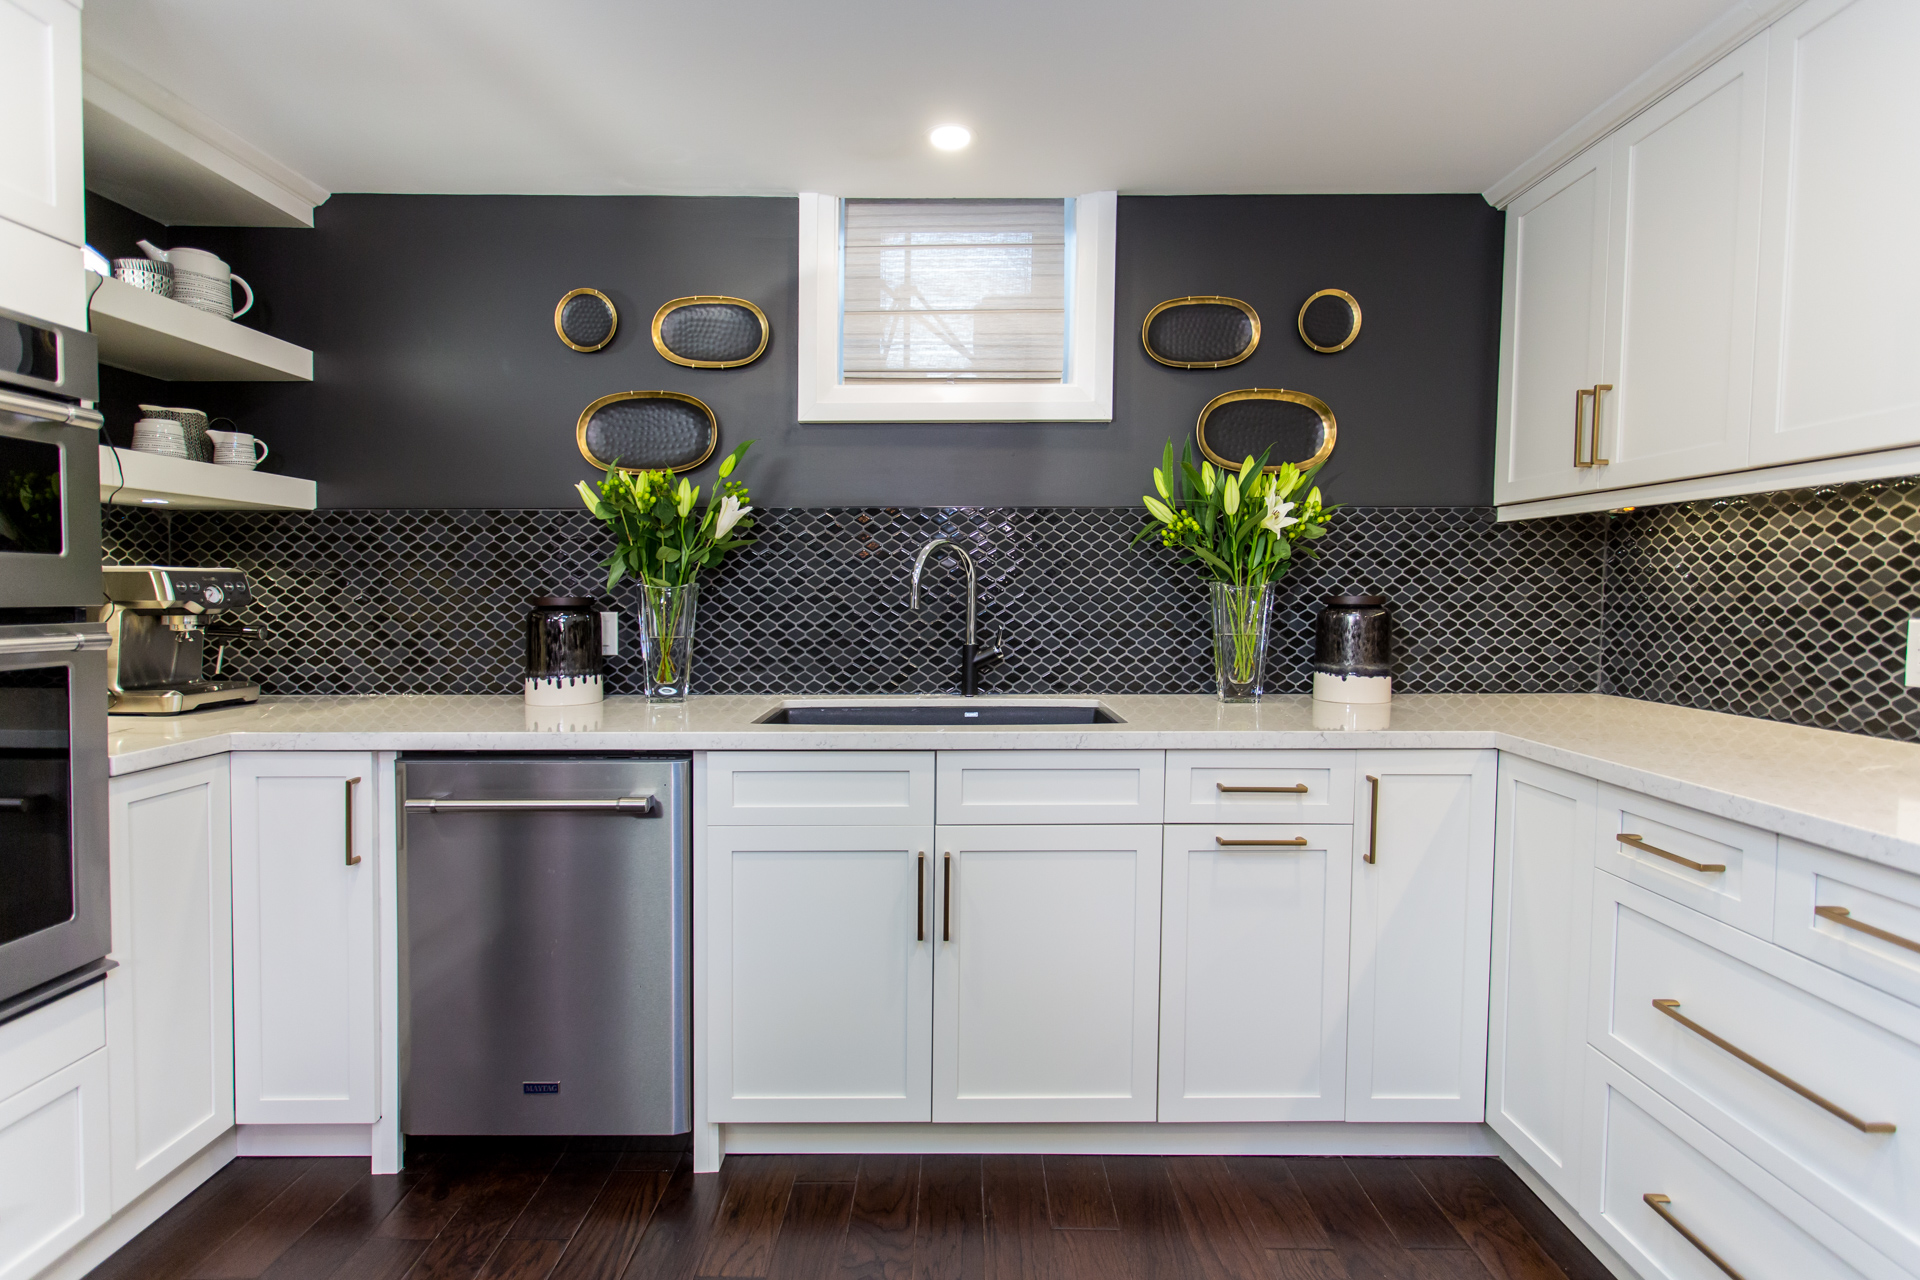 Basement kitchen with black tile backsplash